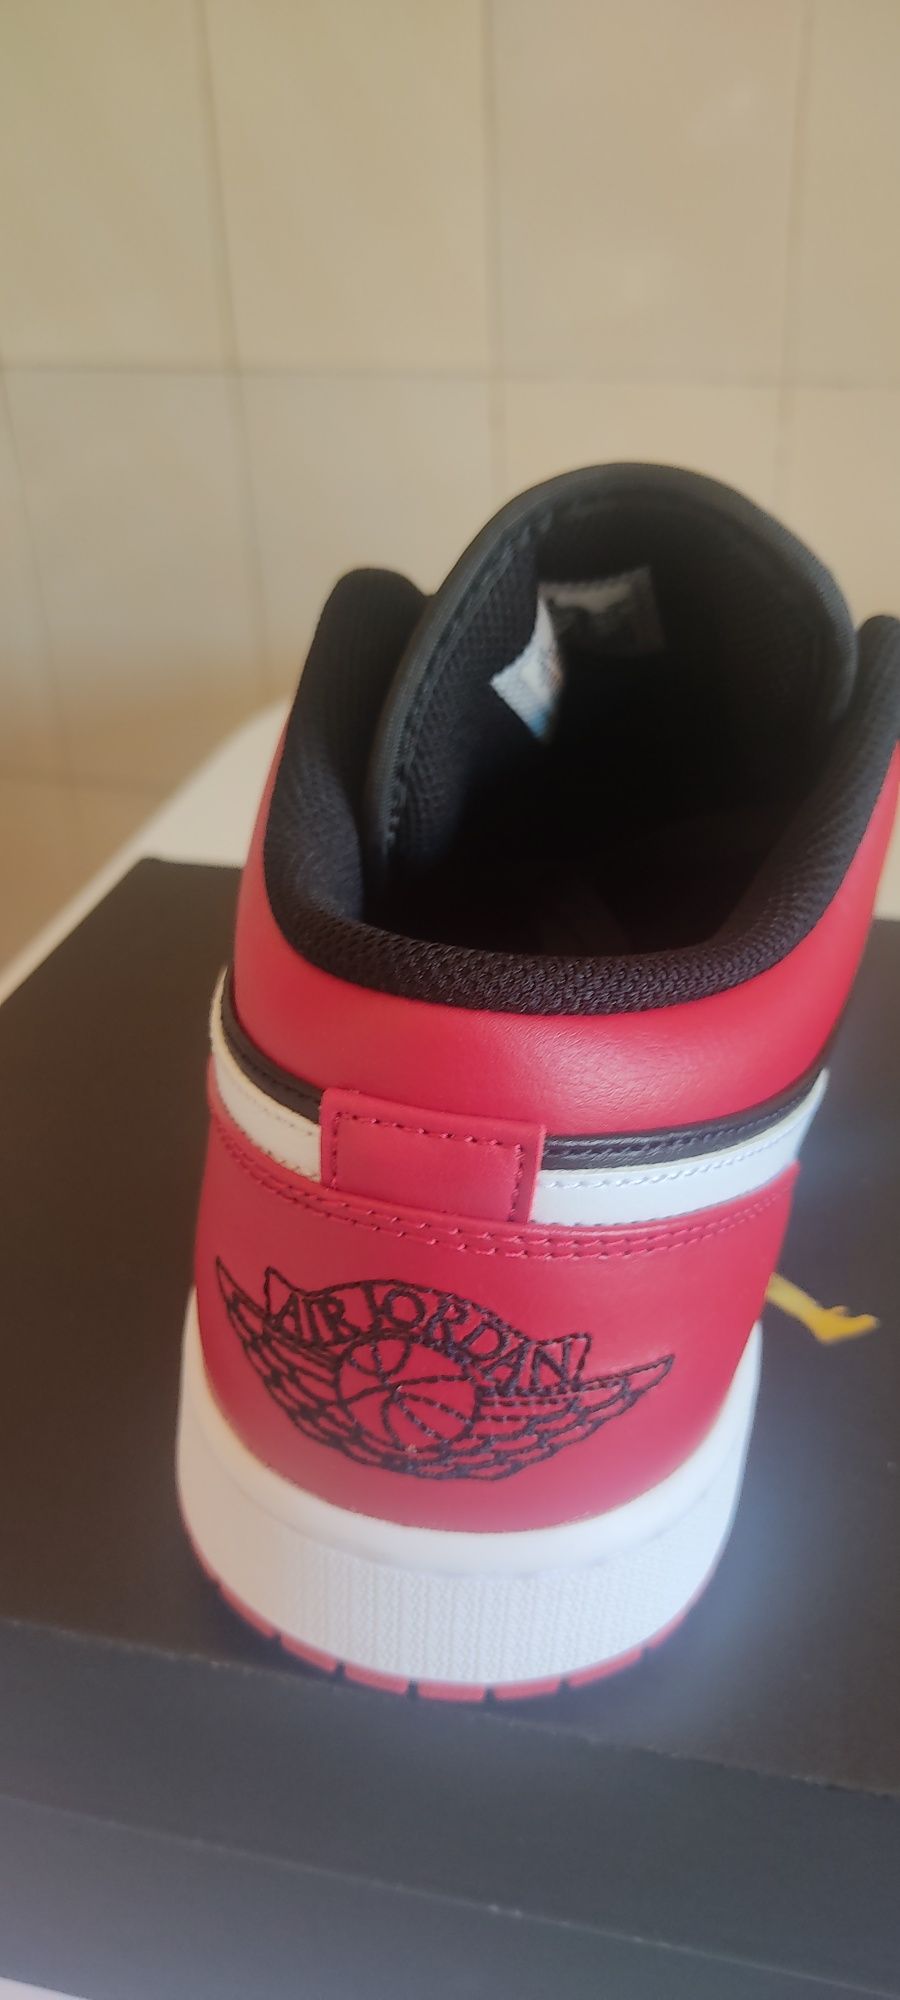 Nike Jordan 1 low tamanho 45